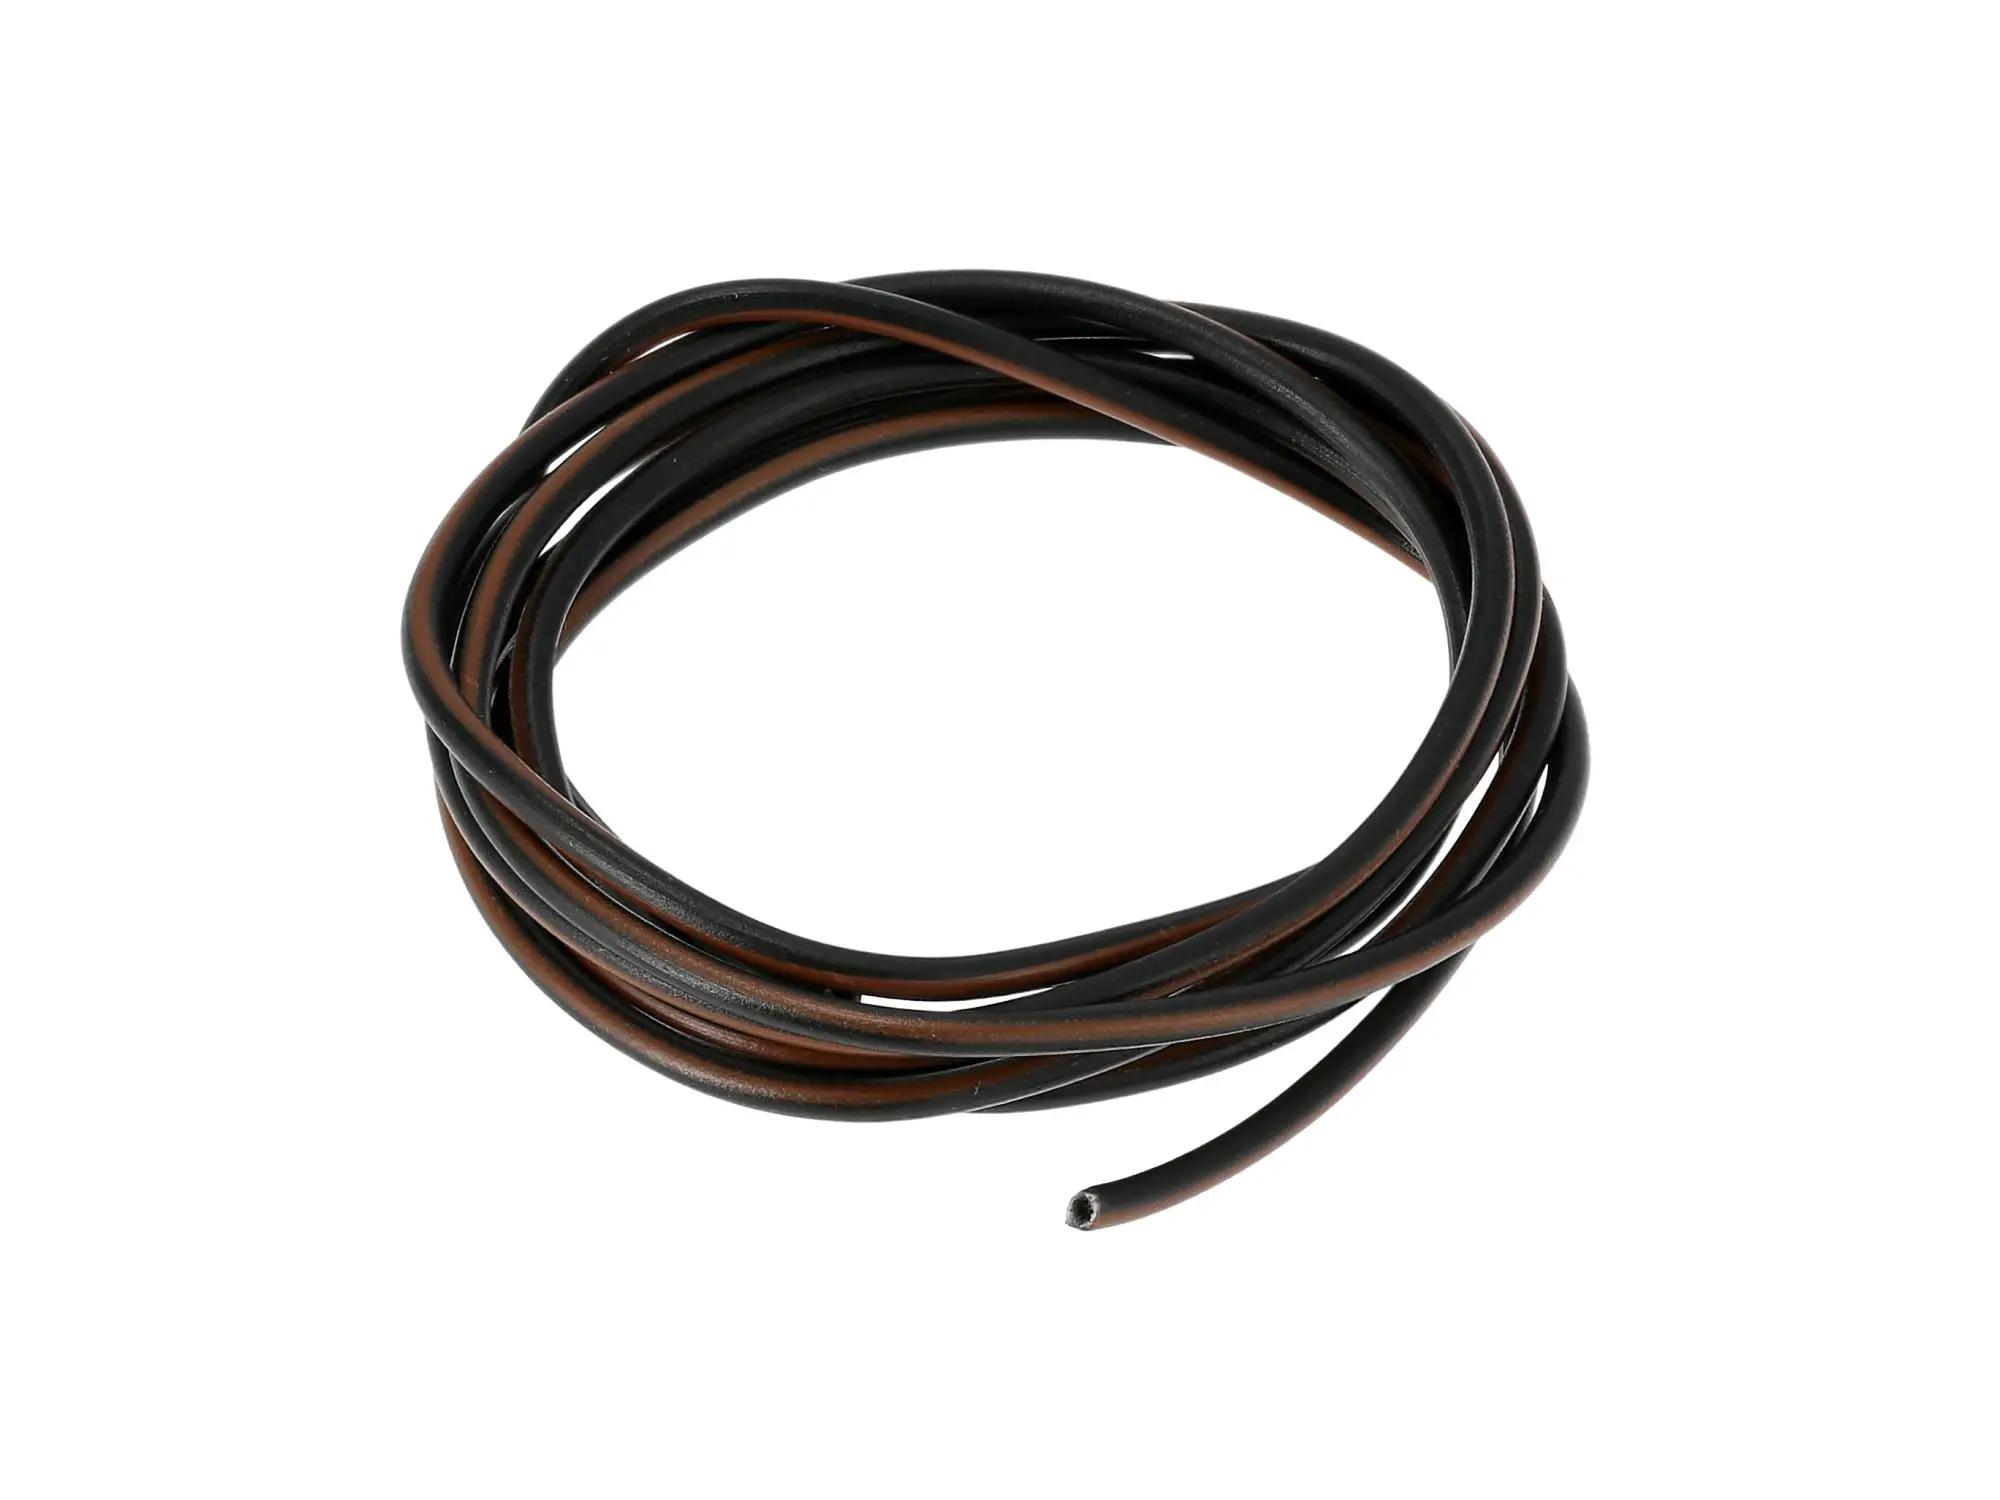 Kabel - Schwarz/Braun 0,50mm² Fahrzeugleitung - 1m